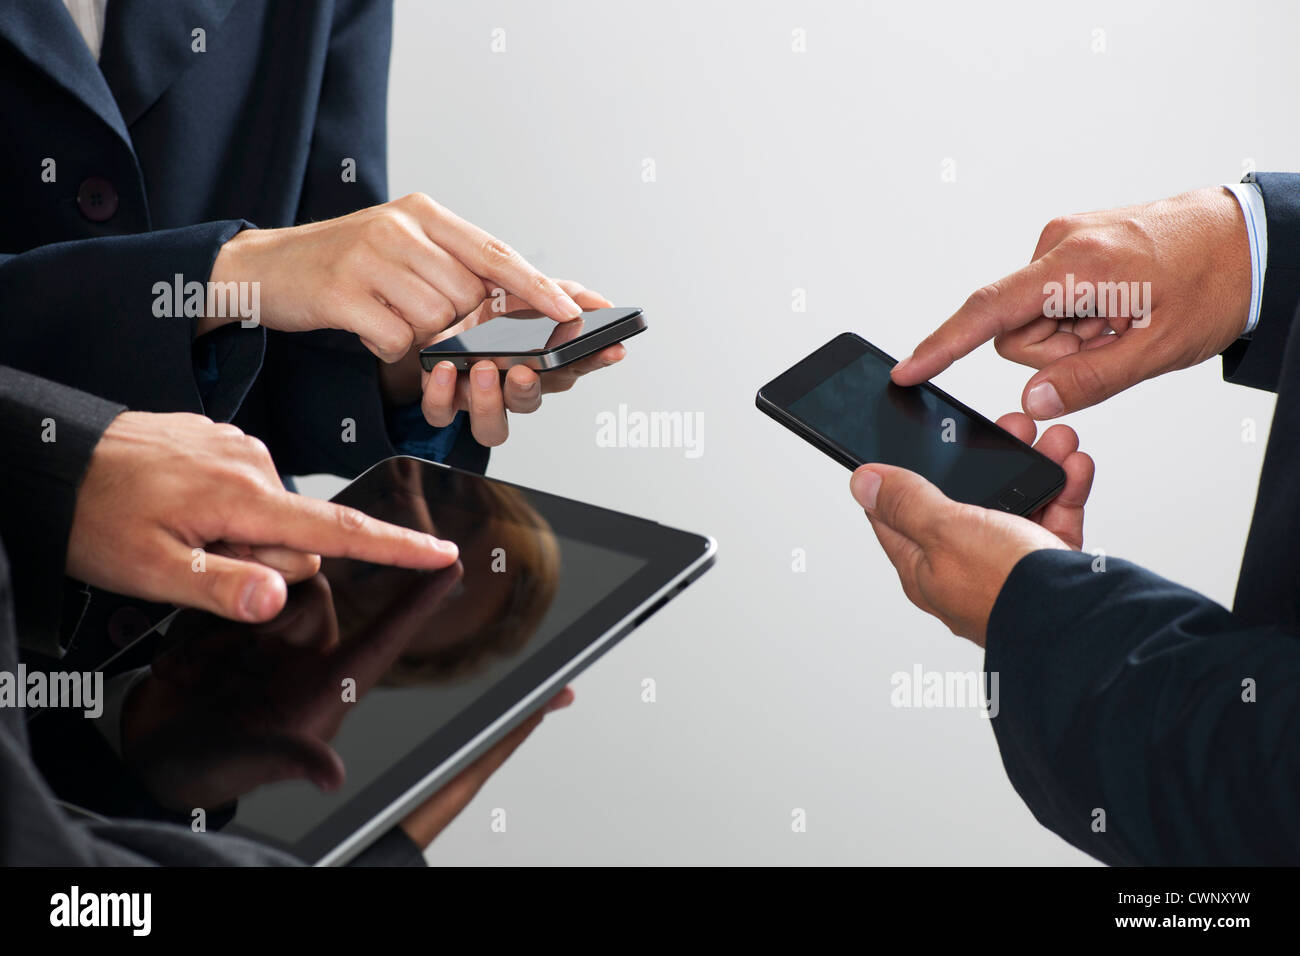 Kollegen, die Austausch von Informationen mit Smartphones und digital-Tablette, beschnitten Stockfoto